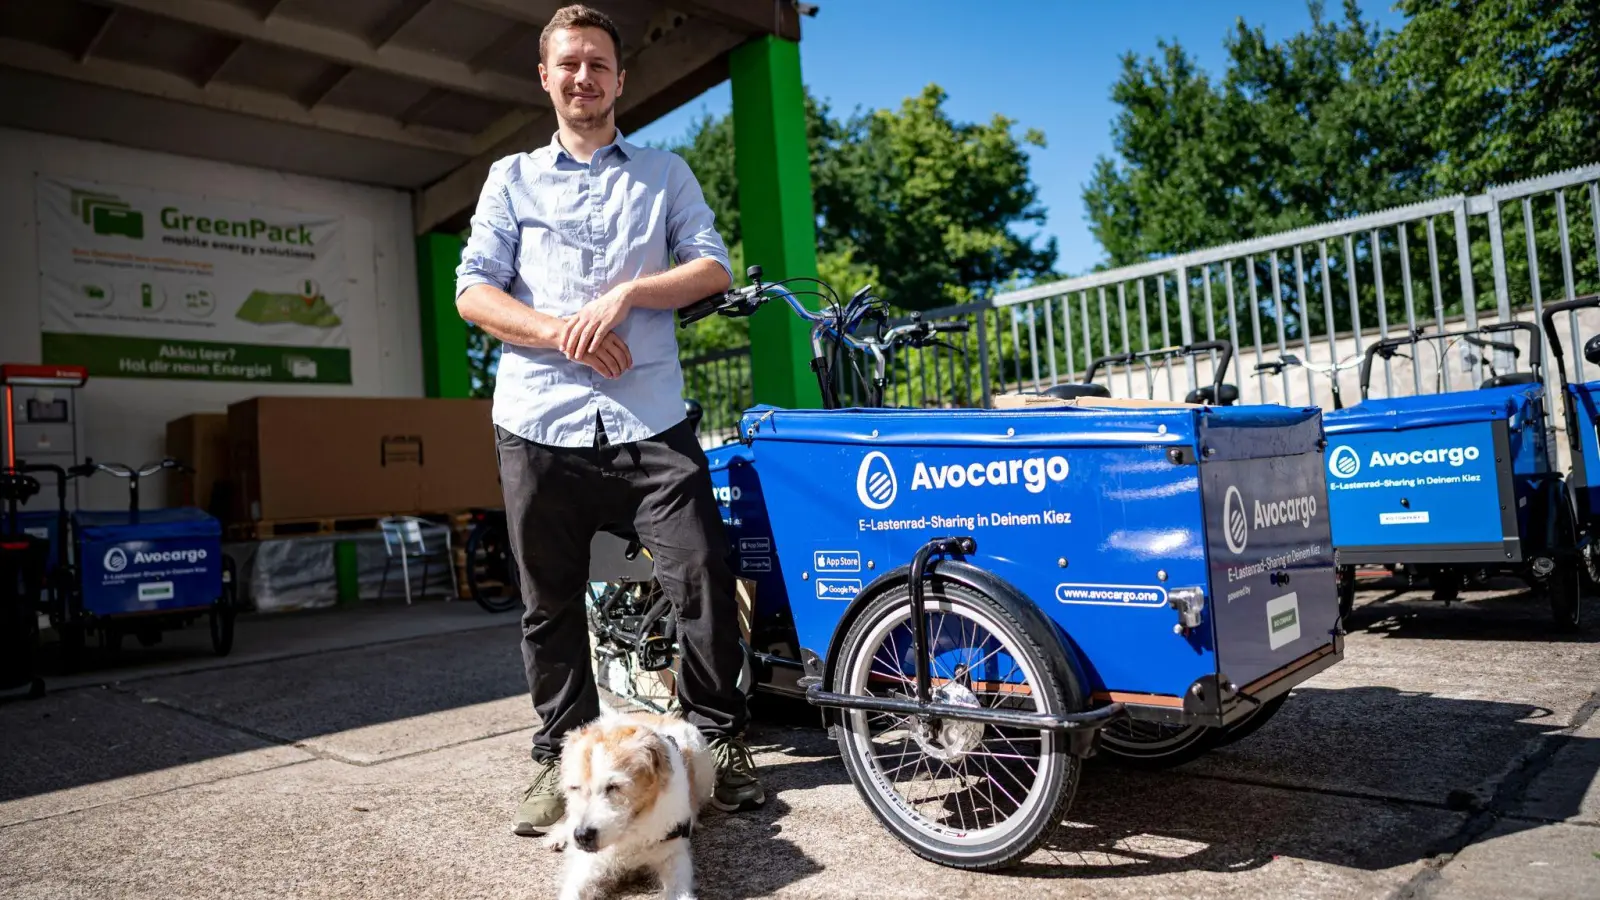 Matti Schurr, CEO und Co-Founder von Avocargo. Das Berliner Start-Up bietet E-Lastenräder in Berlin an und will sein Angebot in diesem Jahr auf andere Städte ausweiten. (Foto: Fabian Sommer/dpa)